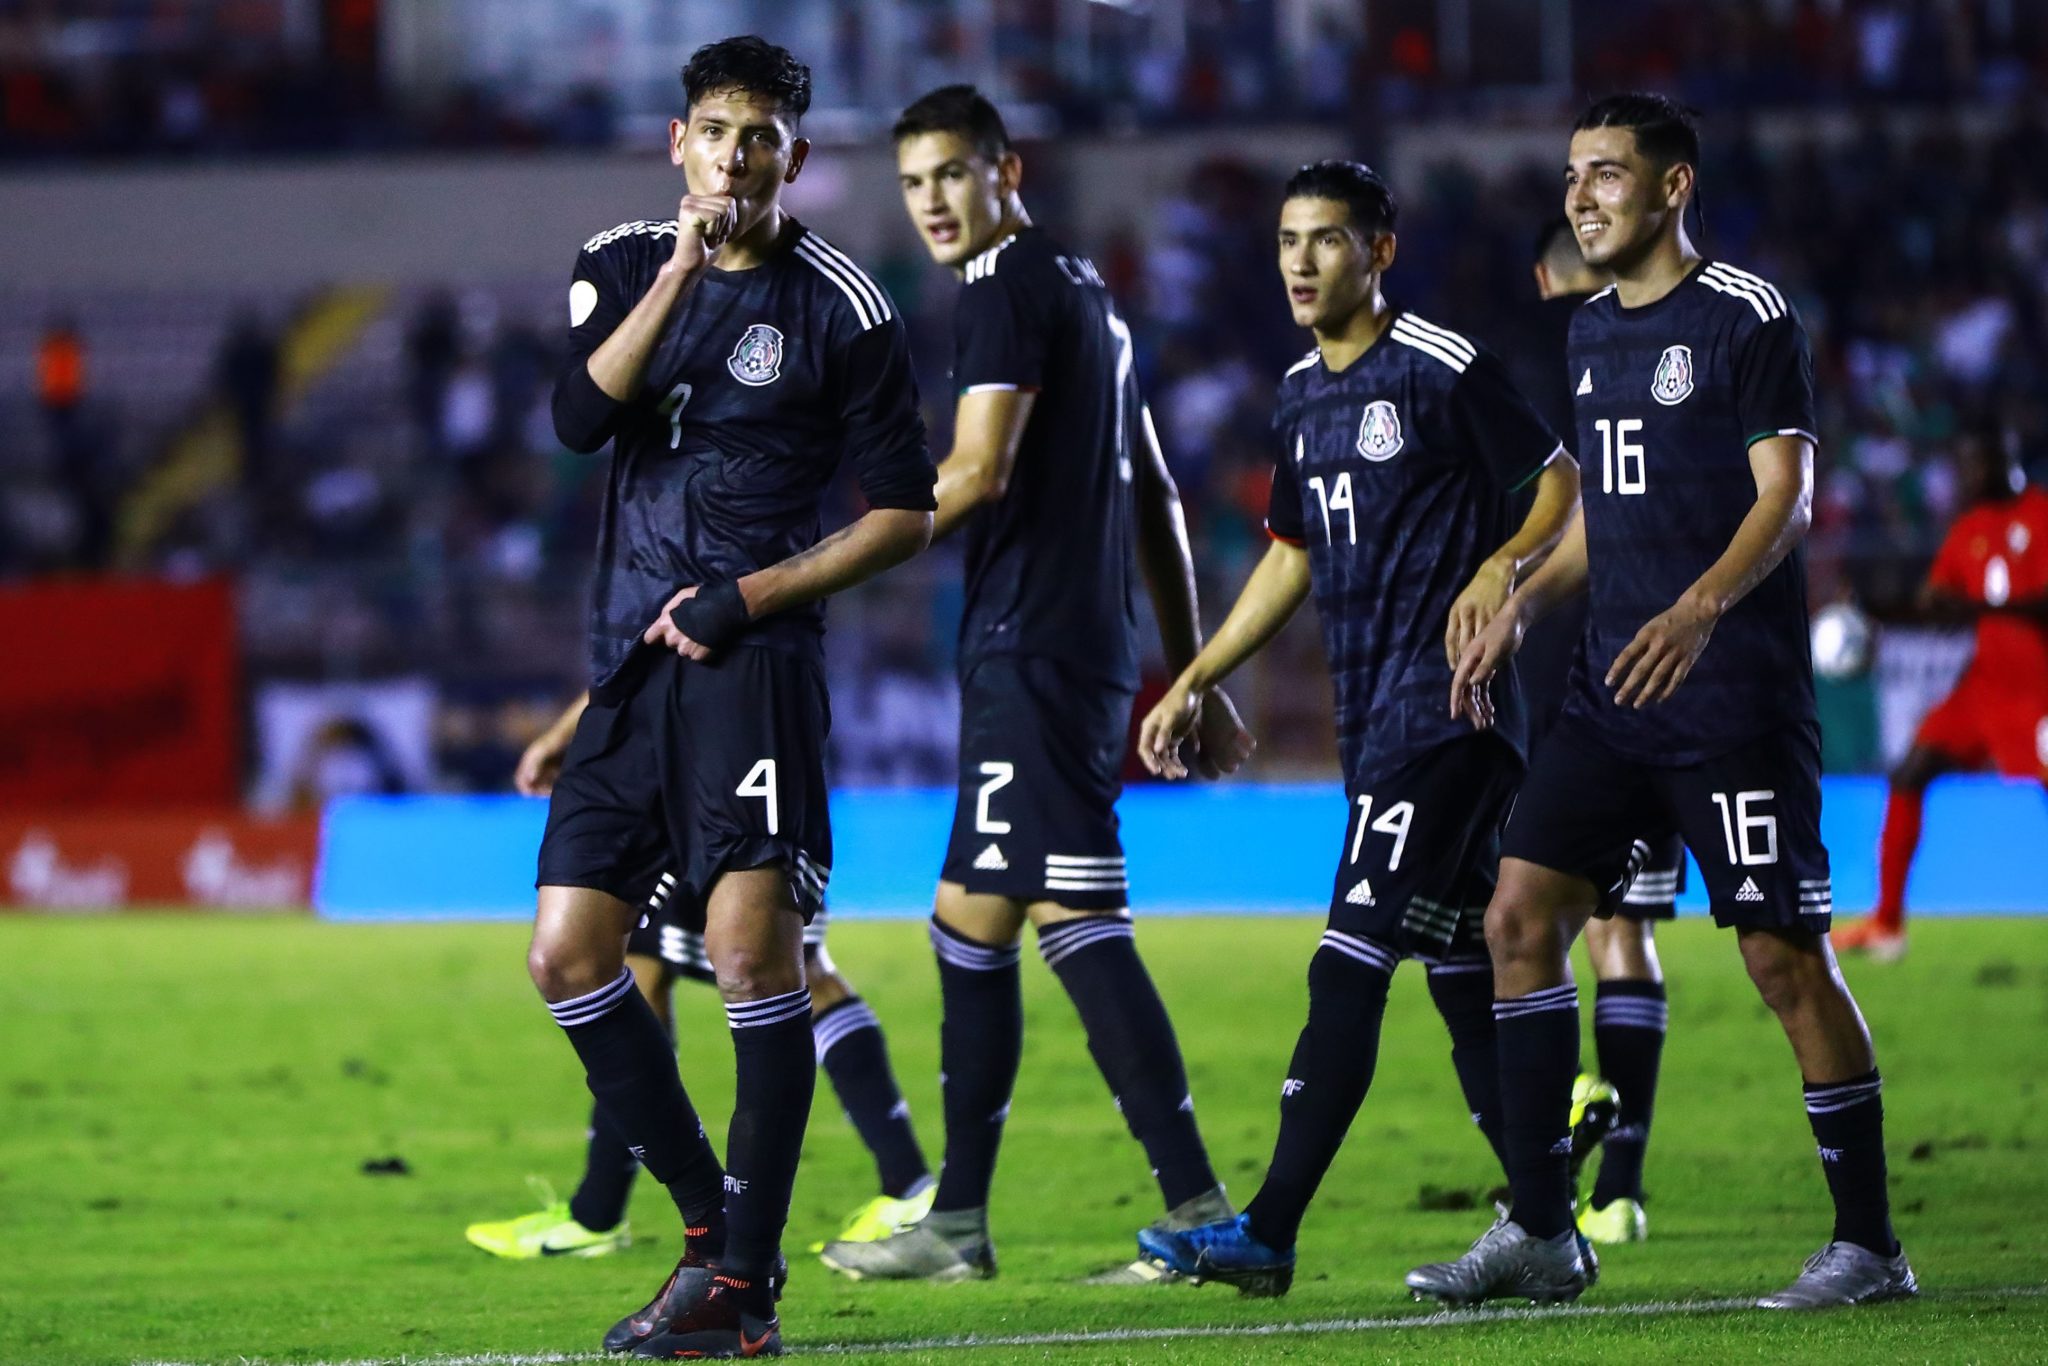 Selección Mexicana venció sin problemas a Panamá. Foto: Miselección